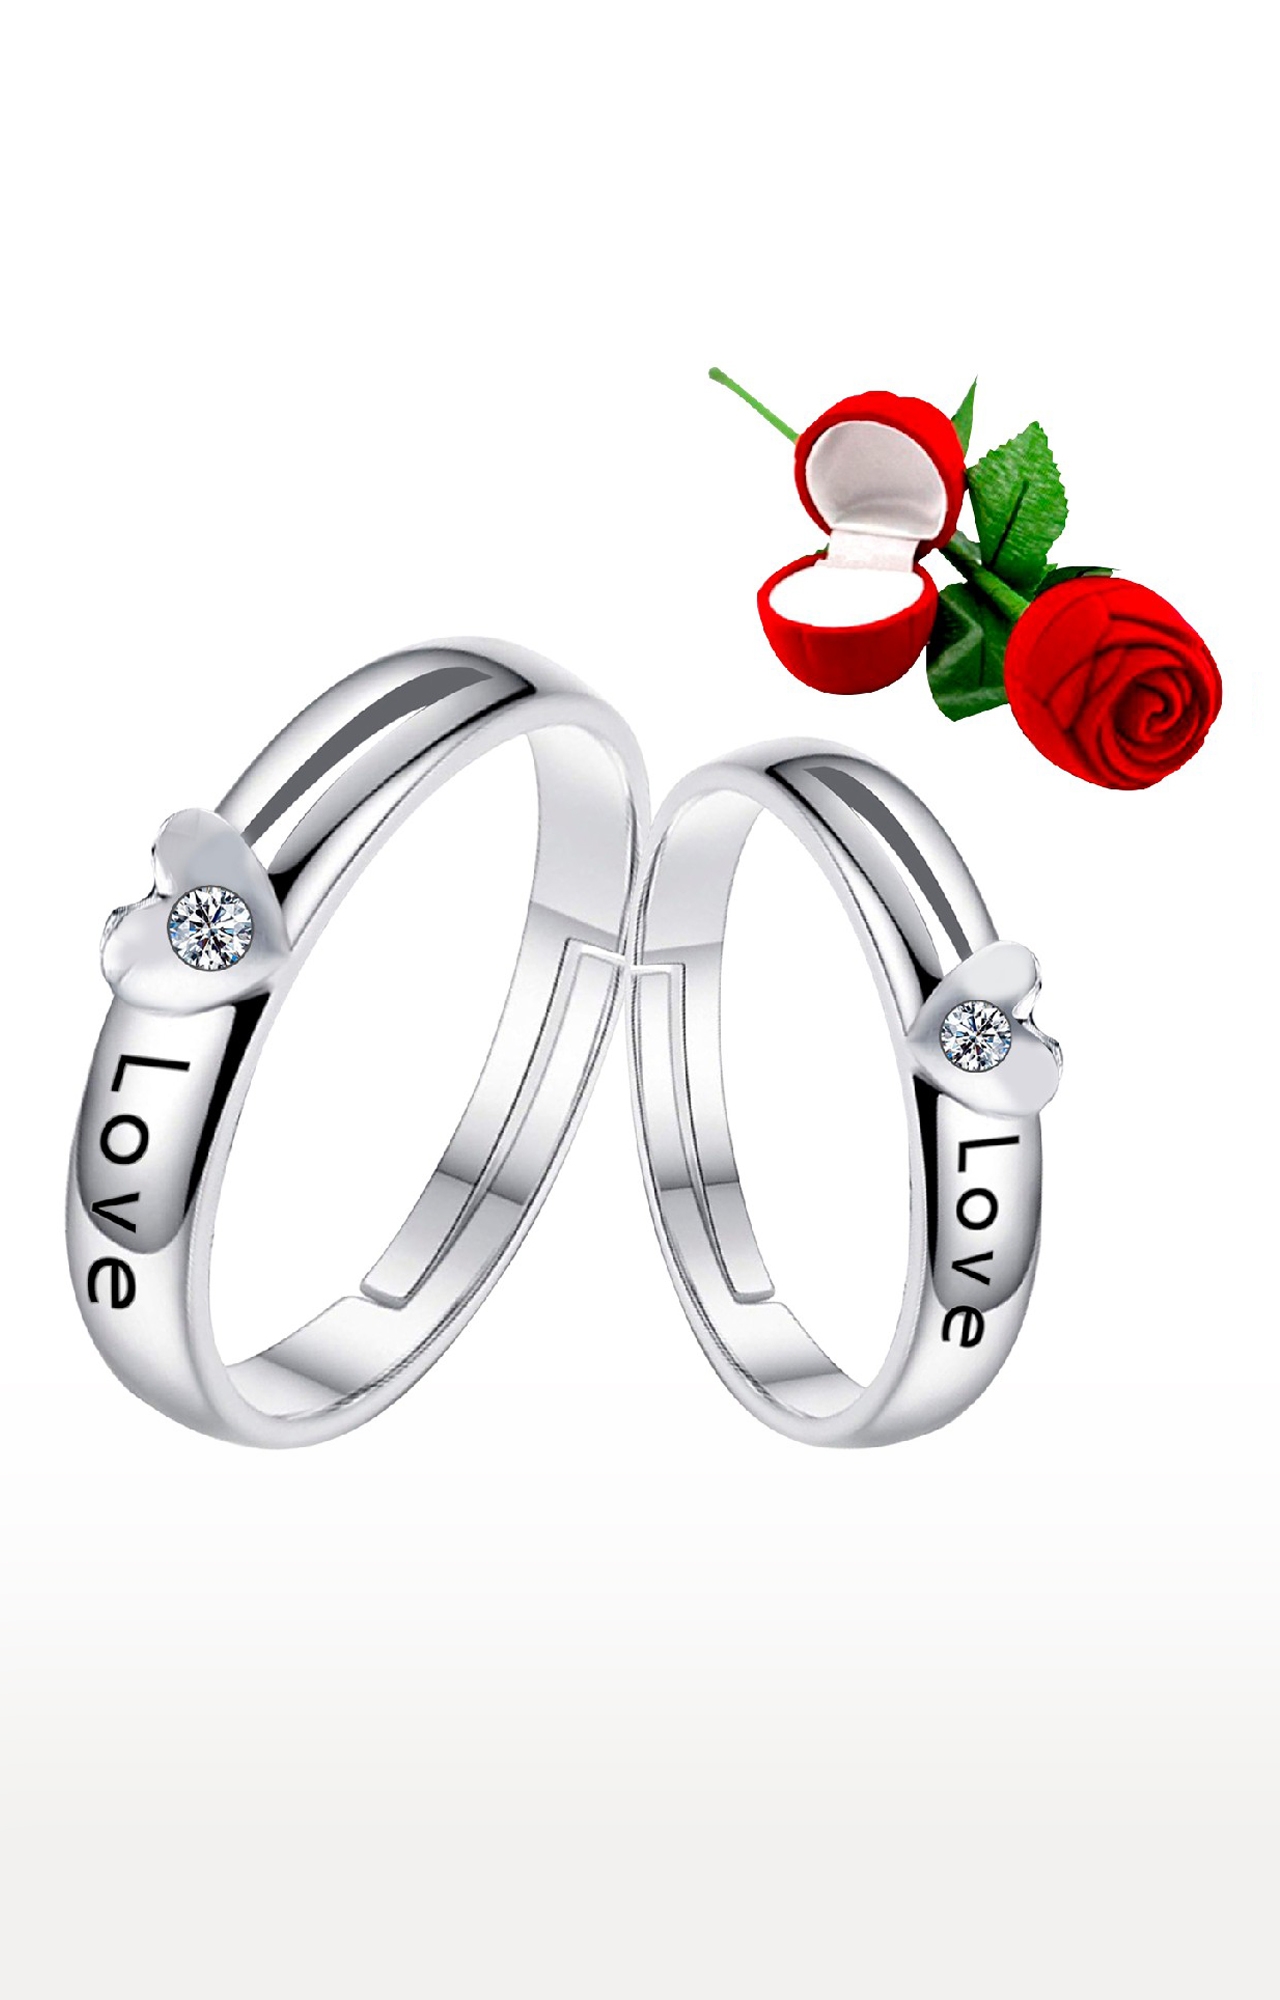 Ring Set Finger Rings Women Girl Gift | Set Adjustable Rings Girl - New  8pcs/set Gold - Aliexpress